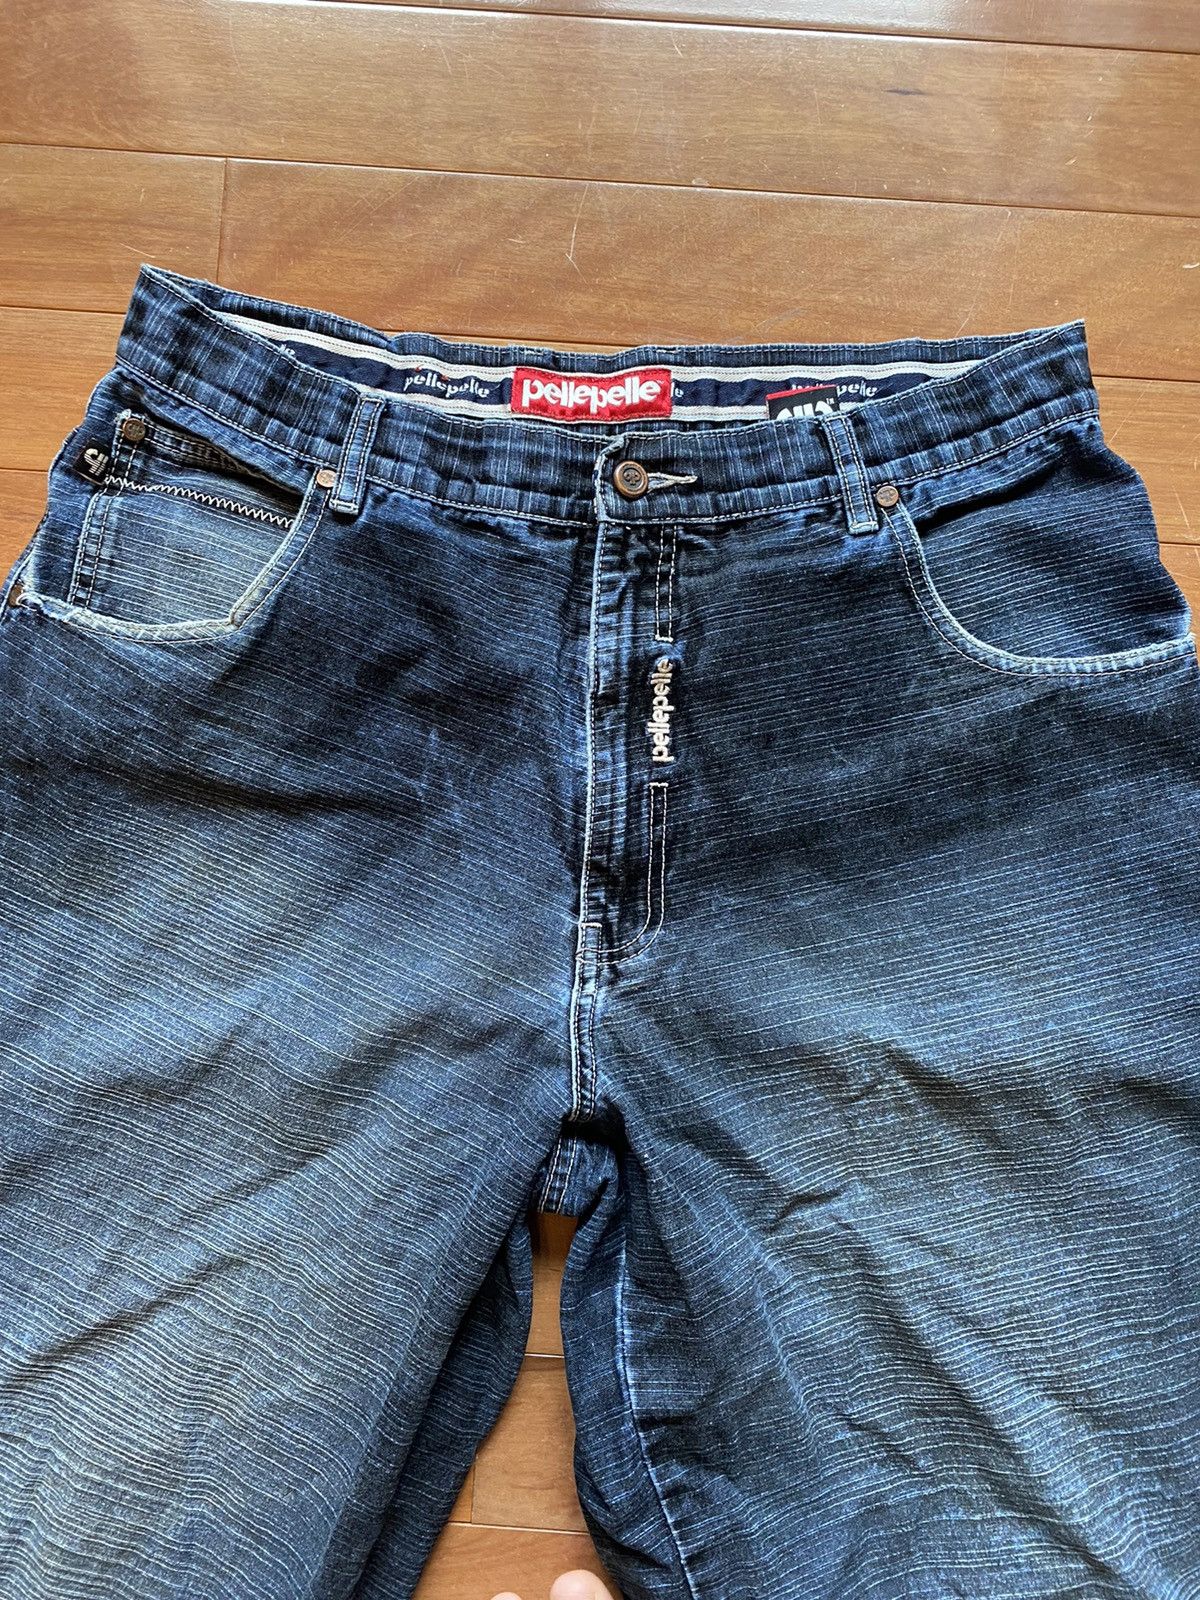 Vintage Rare Vintage Y2K JNCO Style Pelle Pelle Wide Fit Jeans Size US 36 / EU 52 - 4 Thumbnail